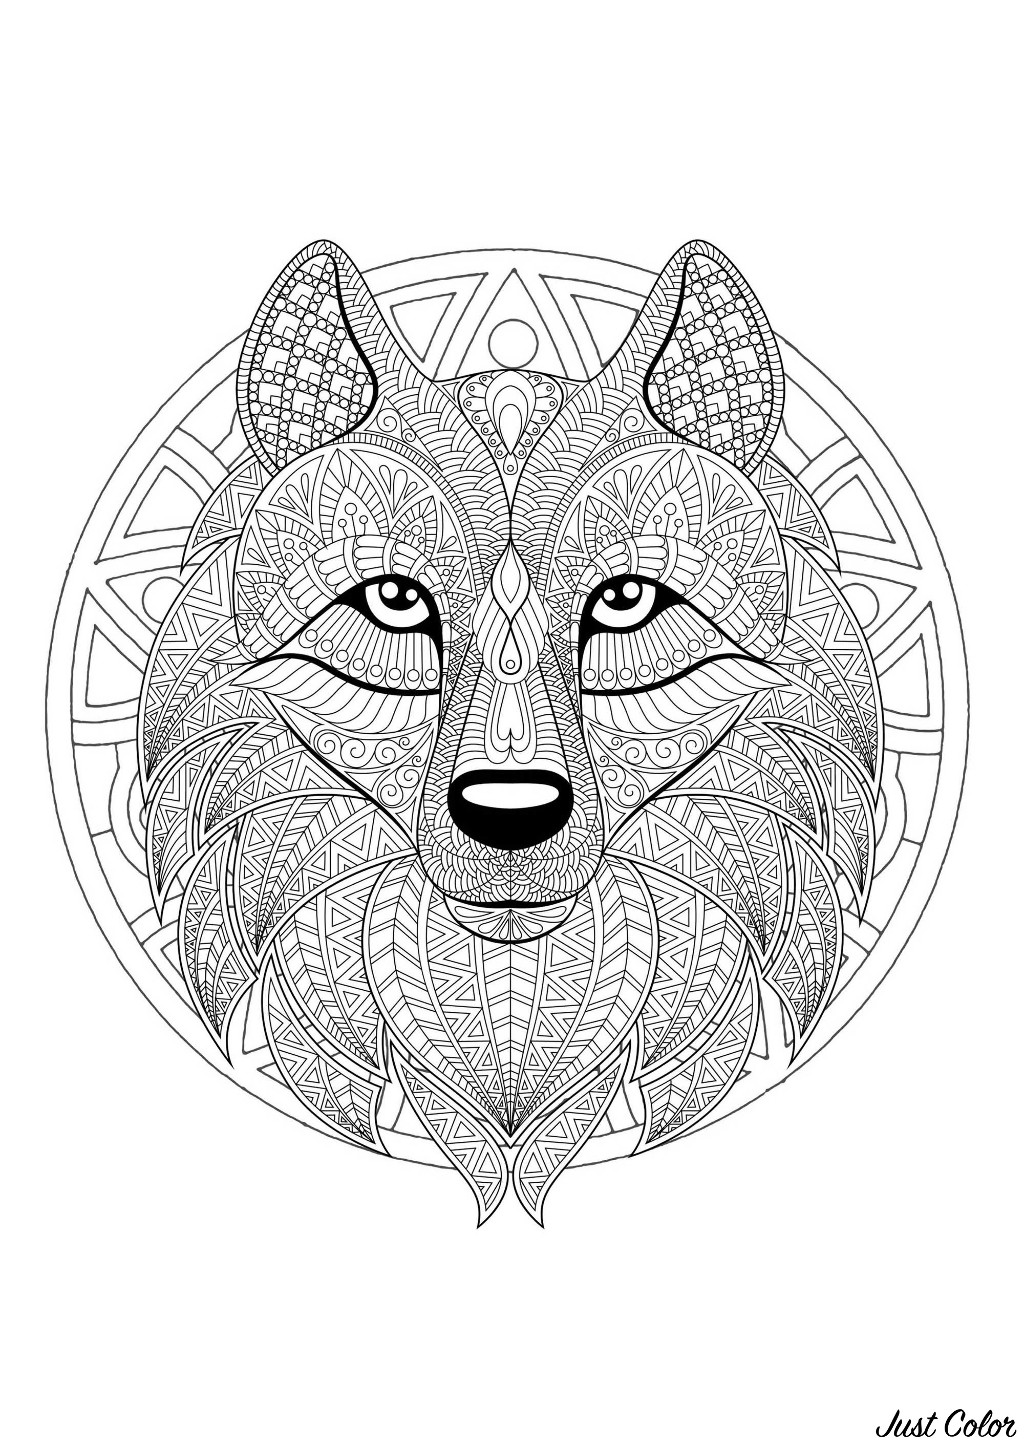 Un Mandala mettant en scène un joli loup, pour ceux qui préfèrent mettre en couleur des éléments concrets et vivants.